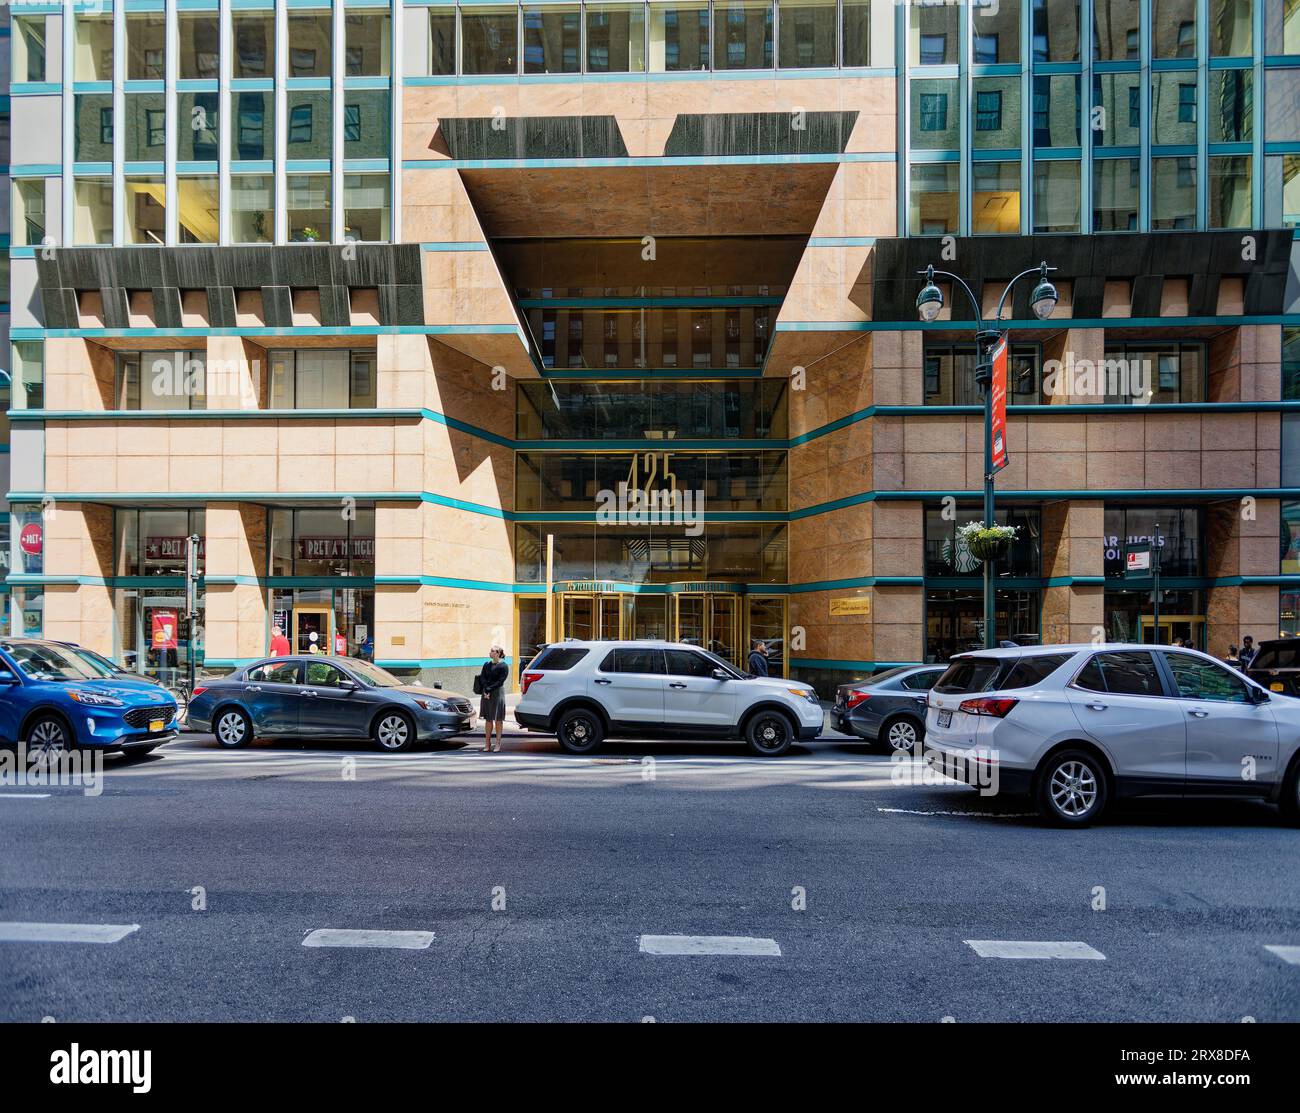 Le 425 Lexington Avenue, surmonté de champignons, entre East 43rd et East 44th Street, injecte de la couleur et des formes étranges dans la grille grise du Midtown Manhattan. Banque D'Images